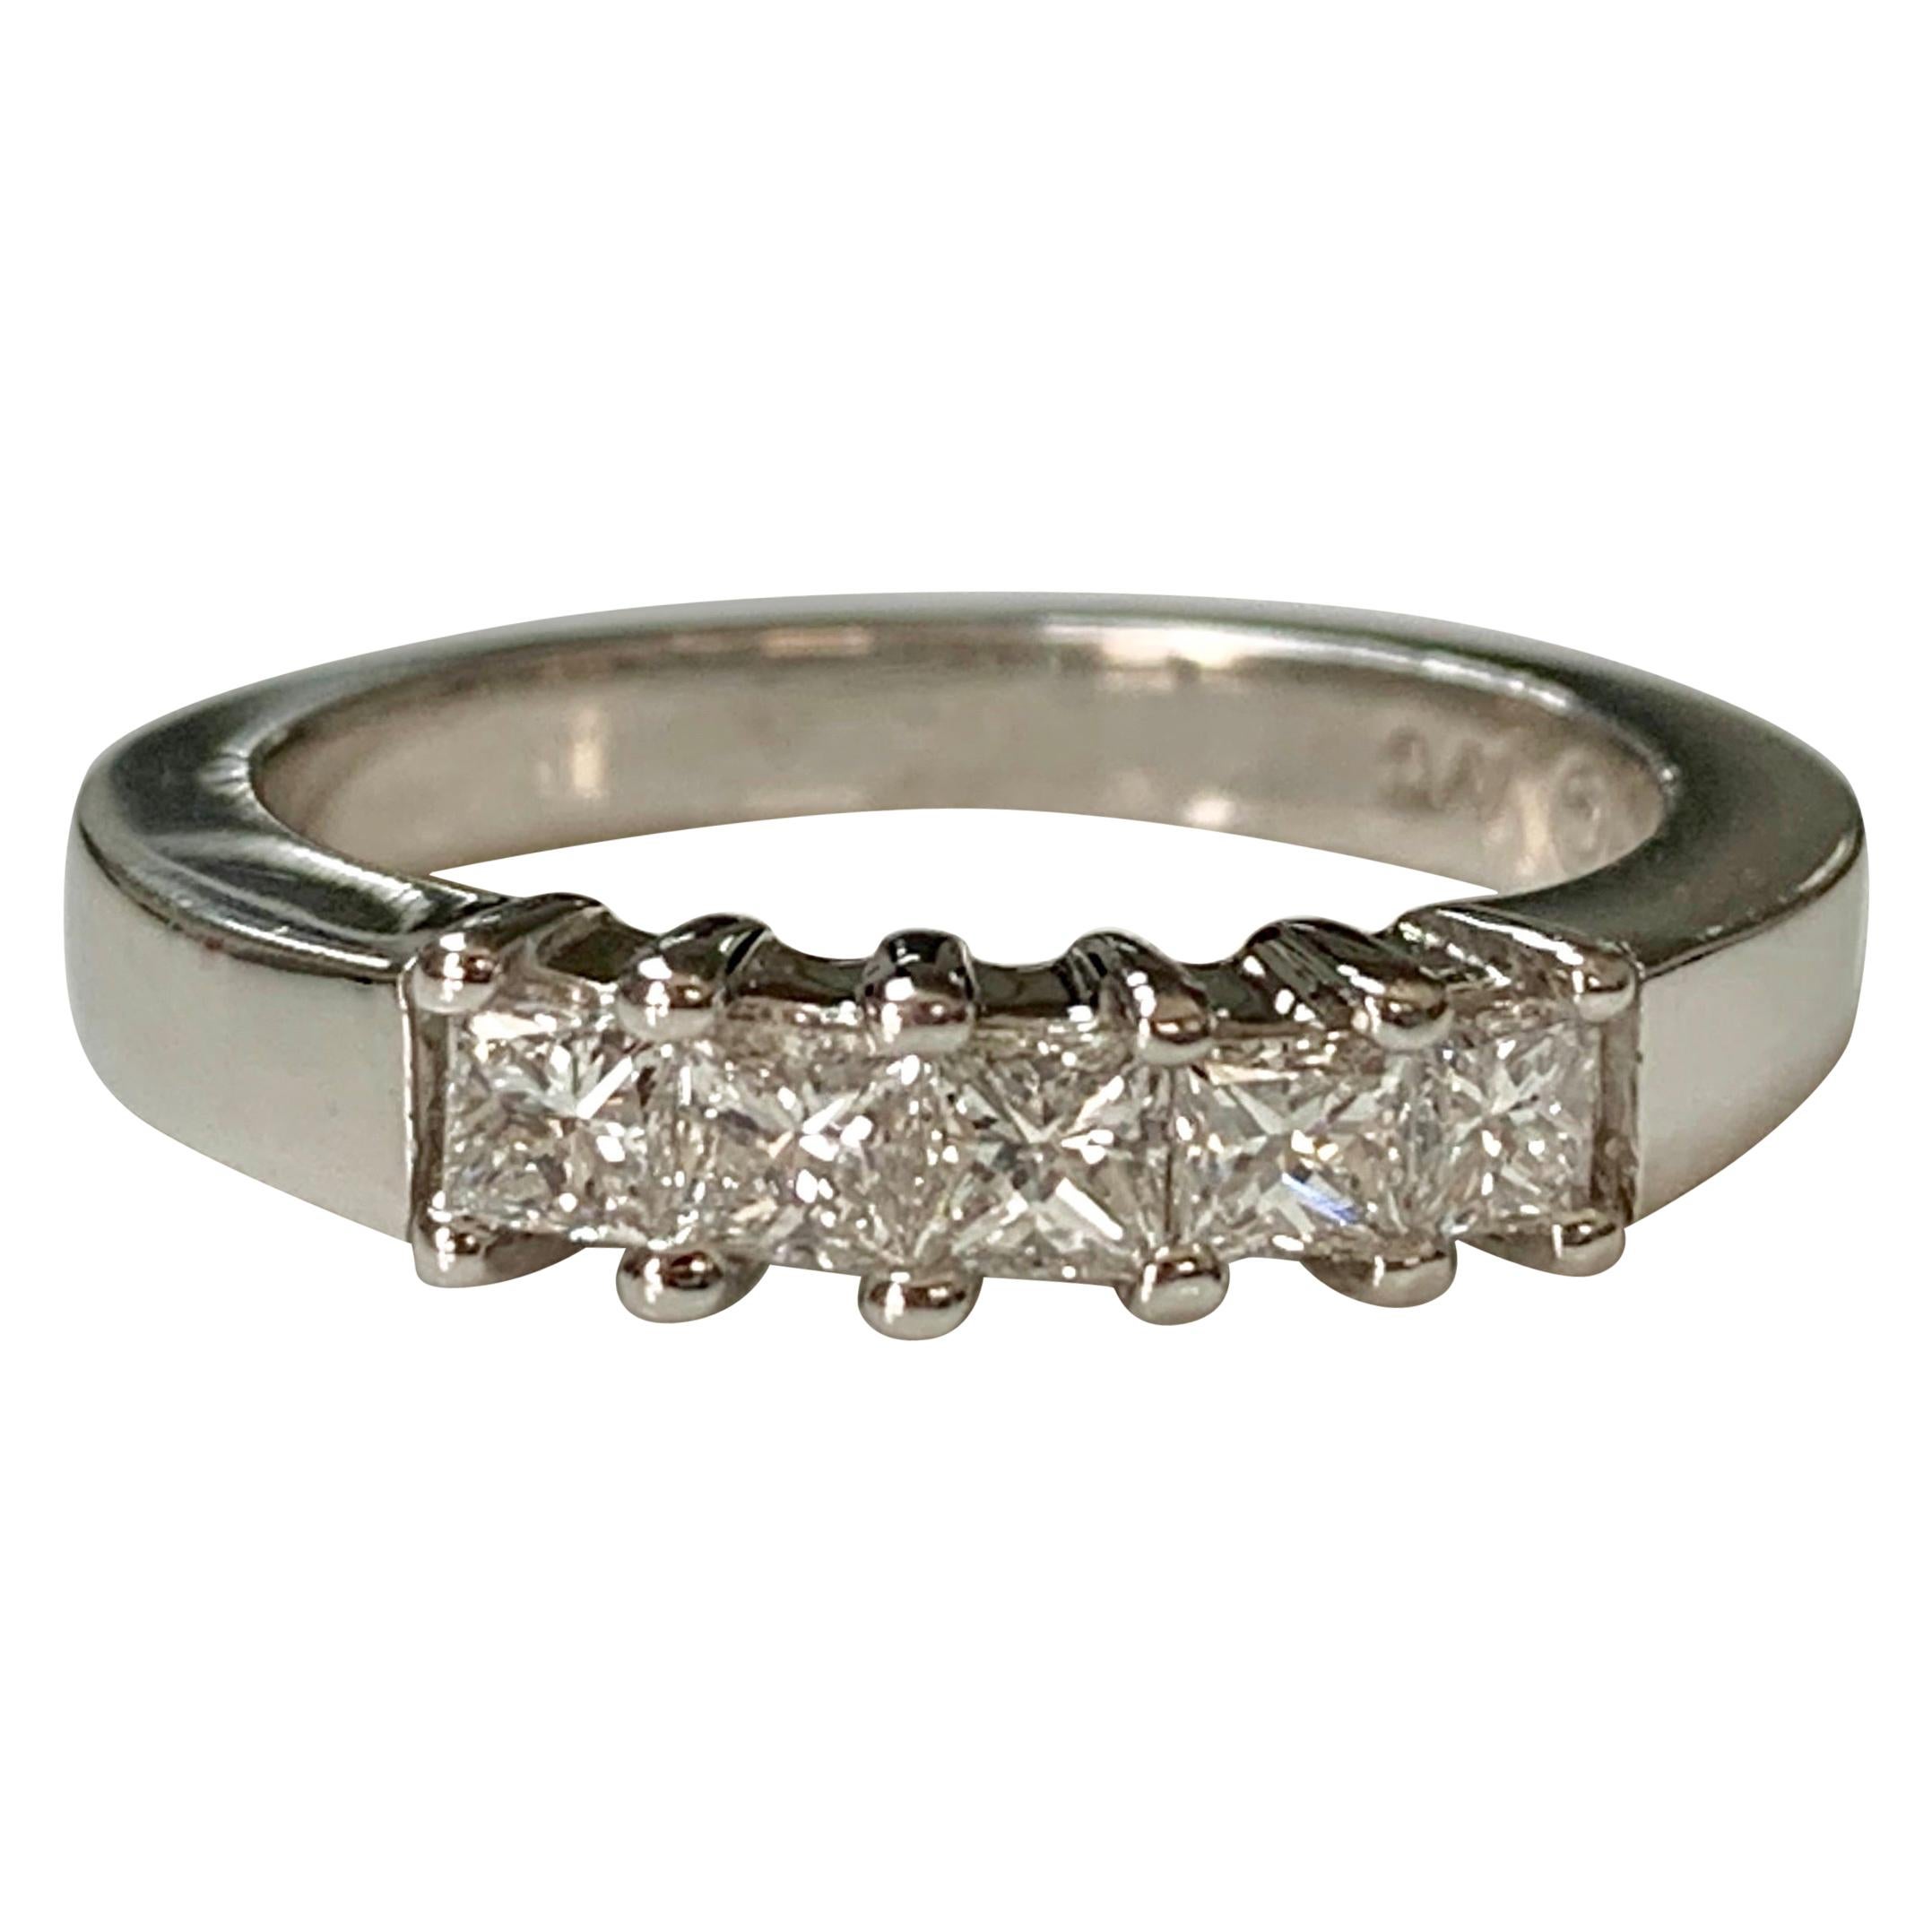 5-Stone Princess Cut Diamond Ring in 18 Karat White Gold